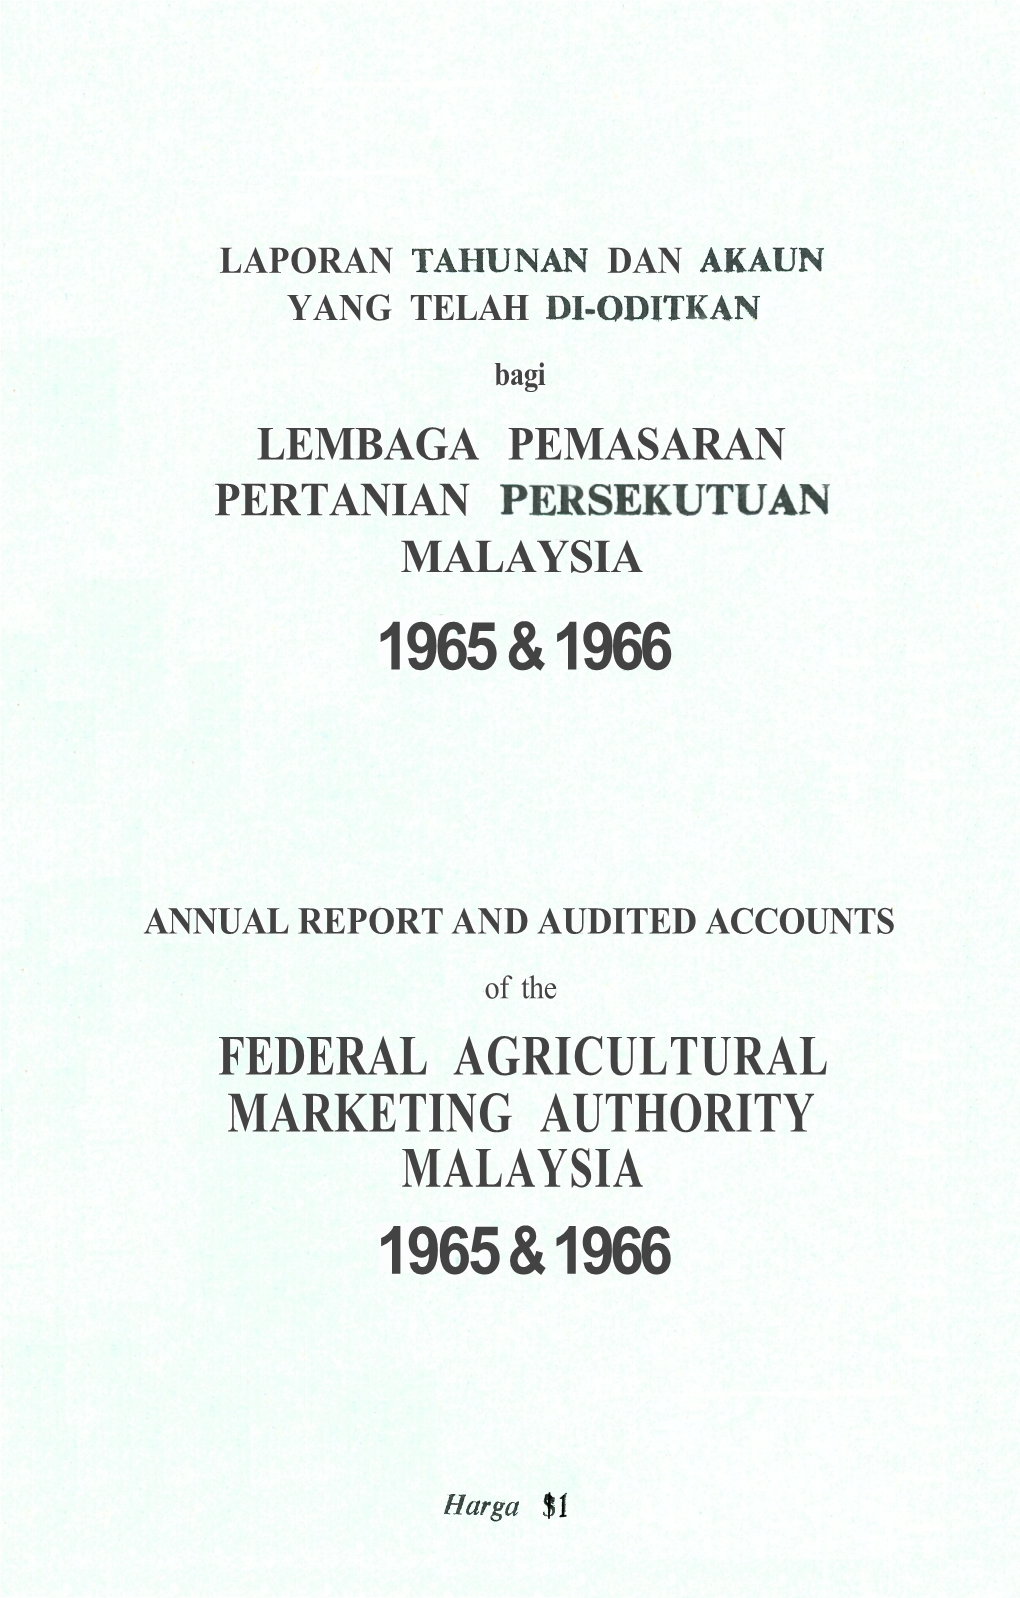 LAPORAN TAHUNAN DAN AKAUN YANG TELAH DI-ODITKAN Bagi LEMBAGA PEMASARAN PERTANIAN PERSEKUTUAN MALAYSIA 1965 & 1966